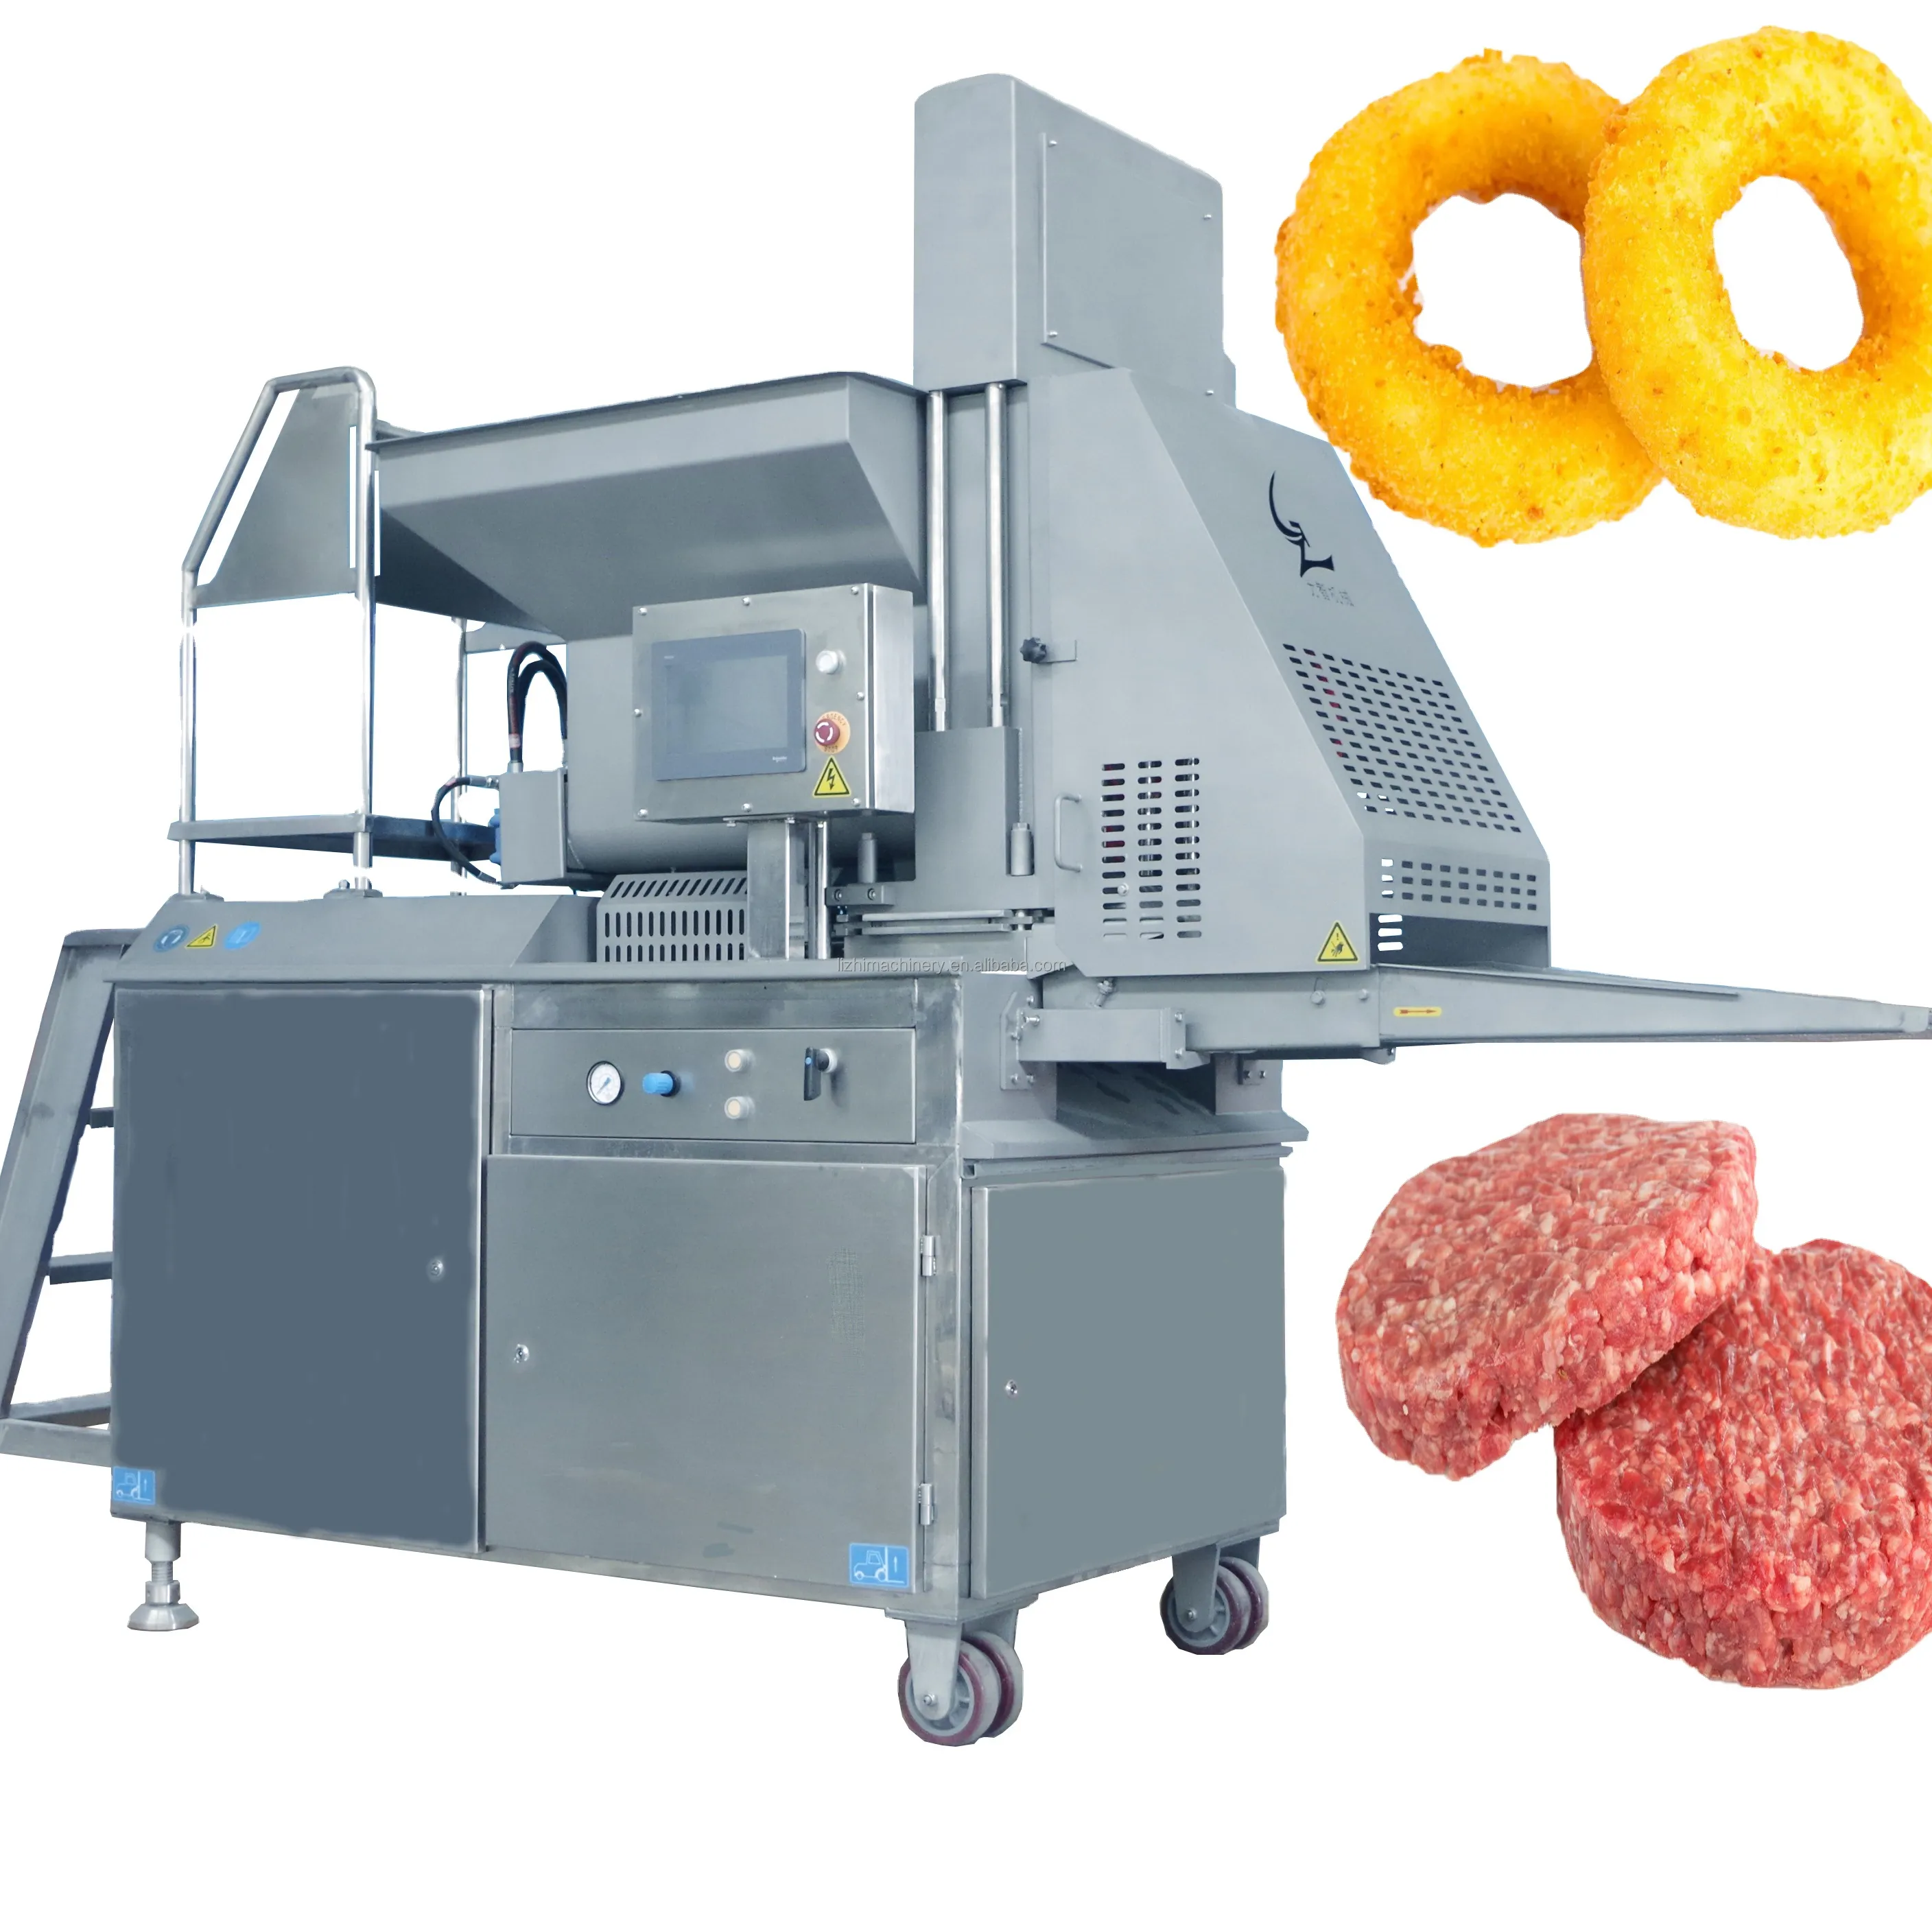 ماكينة بثق وتشكيل قطع اللحم وقطع الفطائر وبرجر وحلقات البصل المجمد